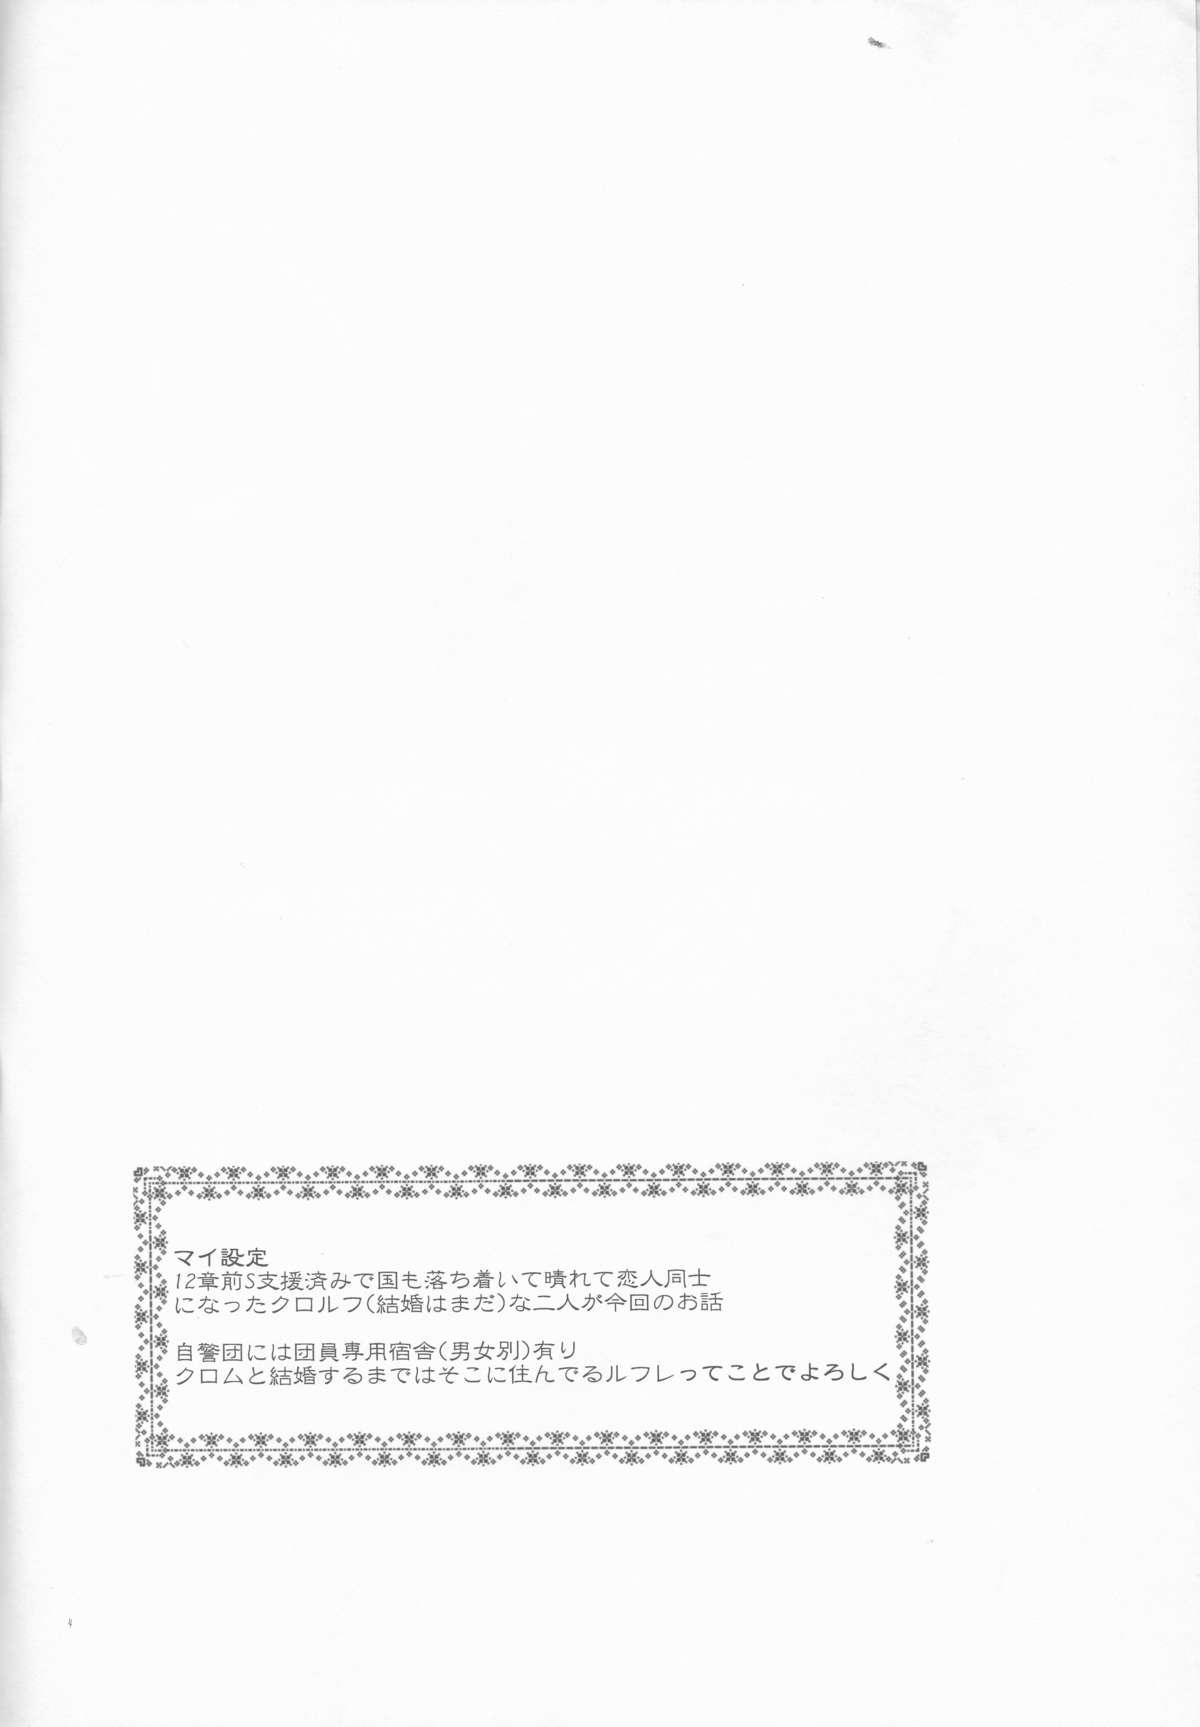 Glory Hole Kurorufu - Fire emblem awakening Lady - Page 4